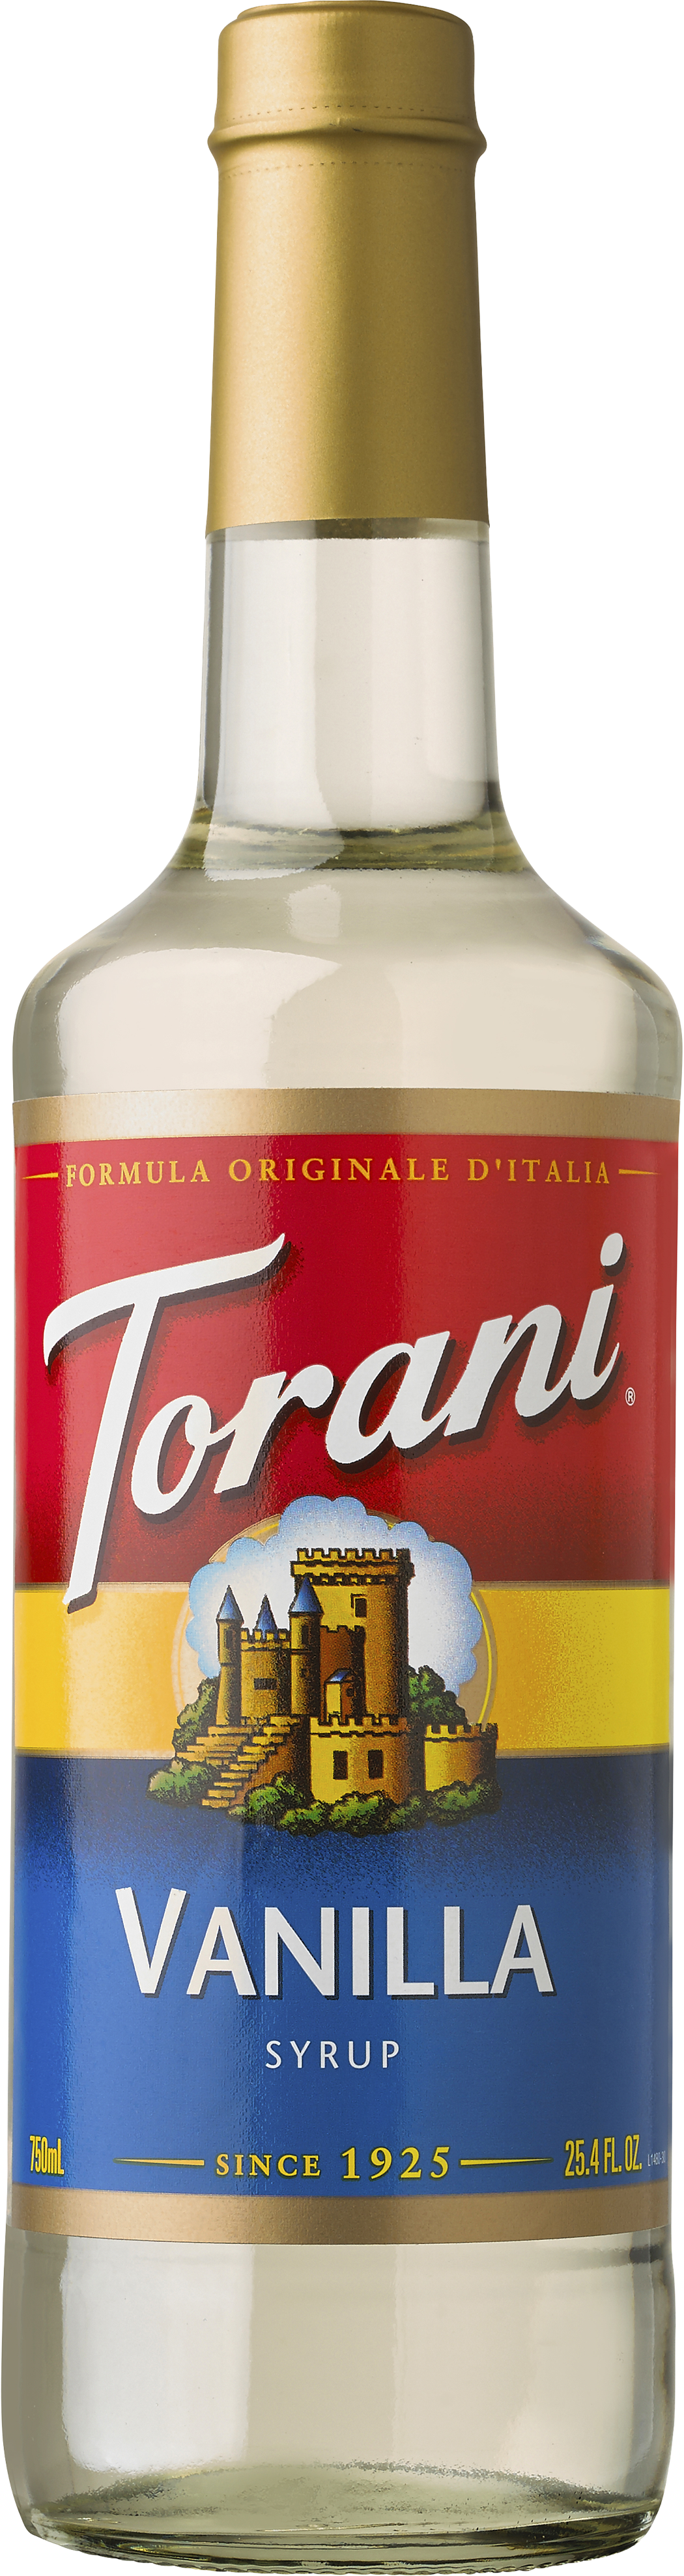 Torani Syrups